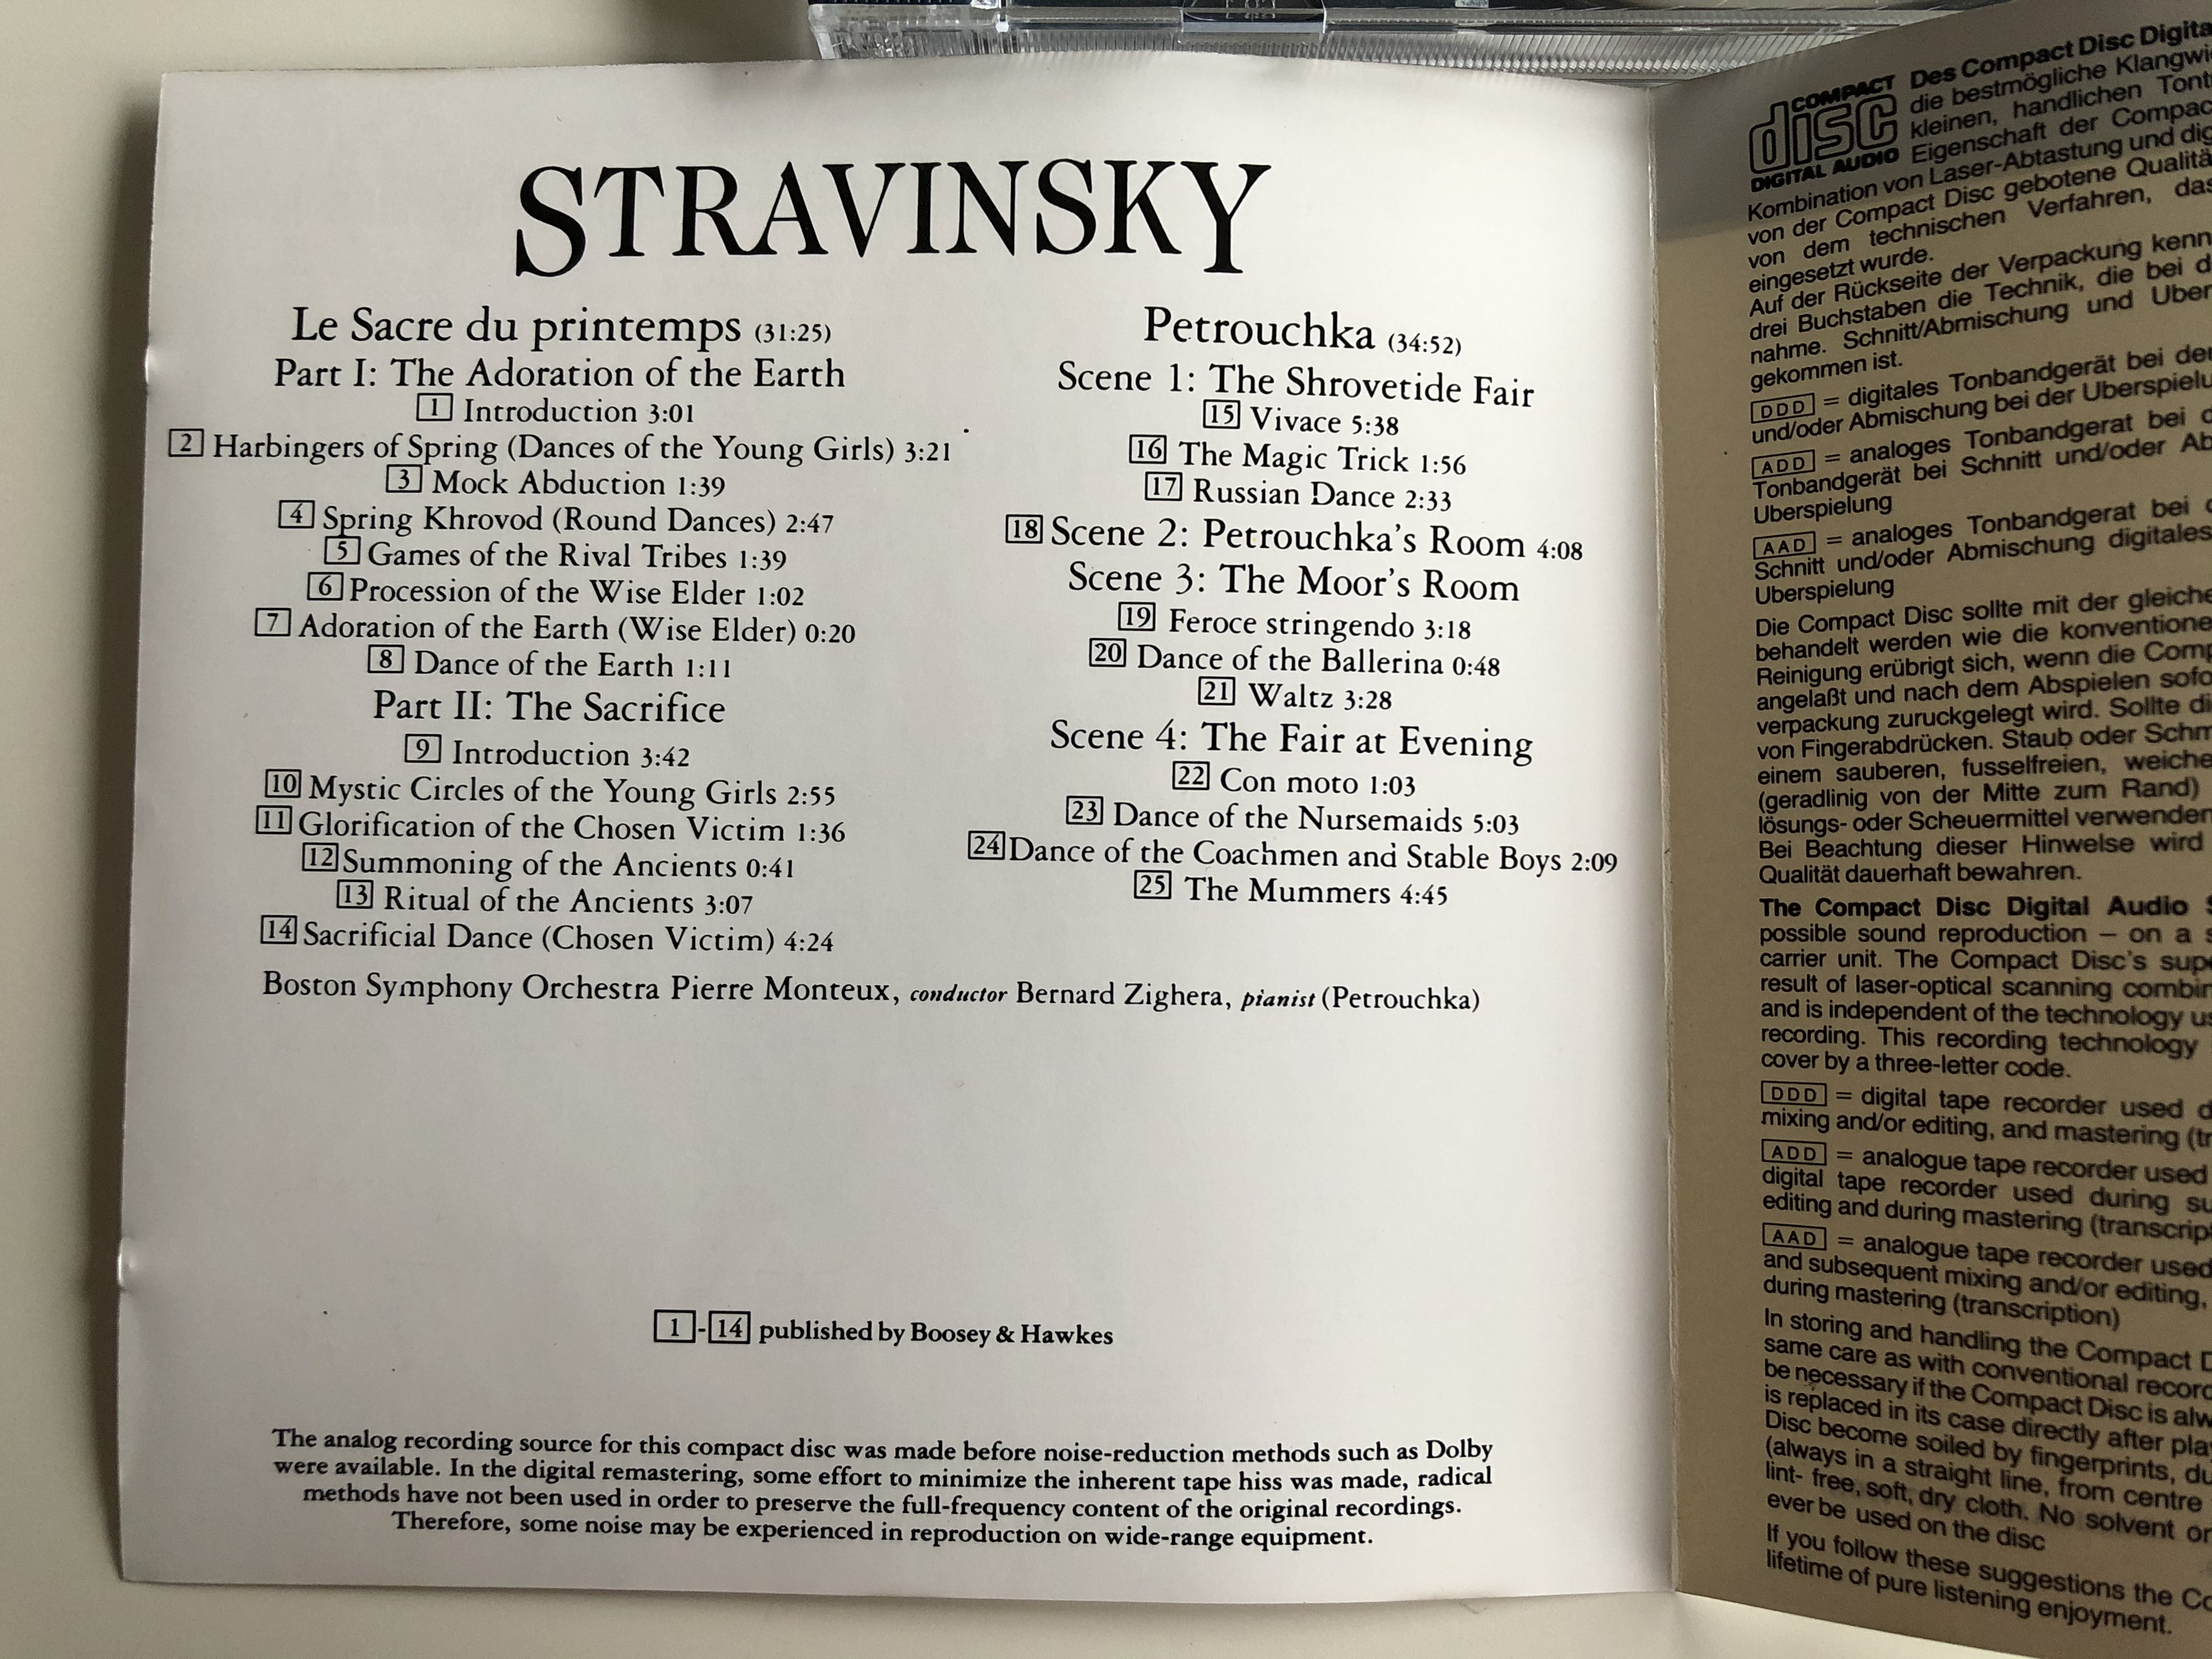 stravinsky-le-sacre-du-printemps-petrouchka-pierre-monteux-boston-symphony-orchestra-rca-audio-cd-1987-gd86529-2-.jpg